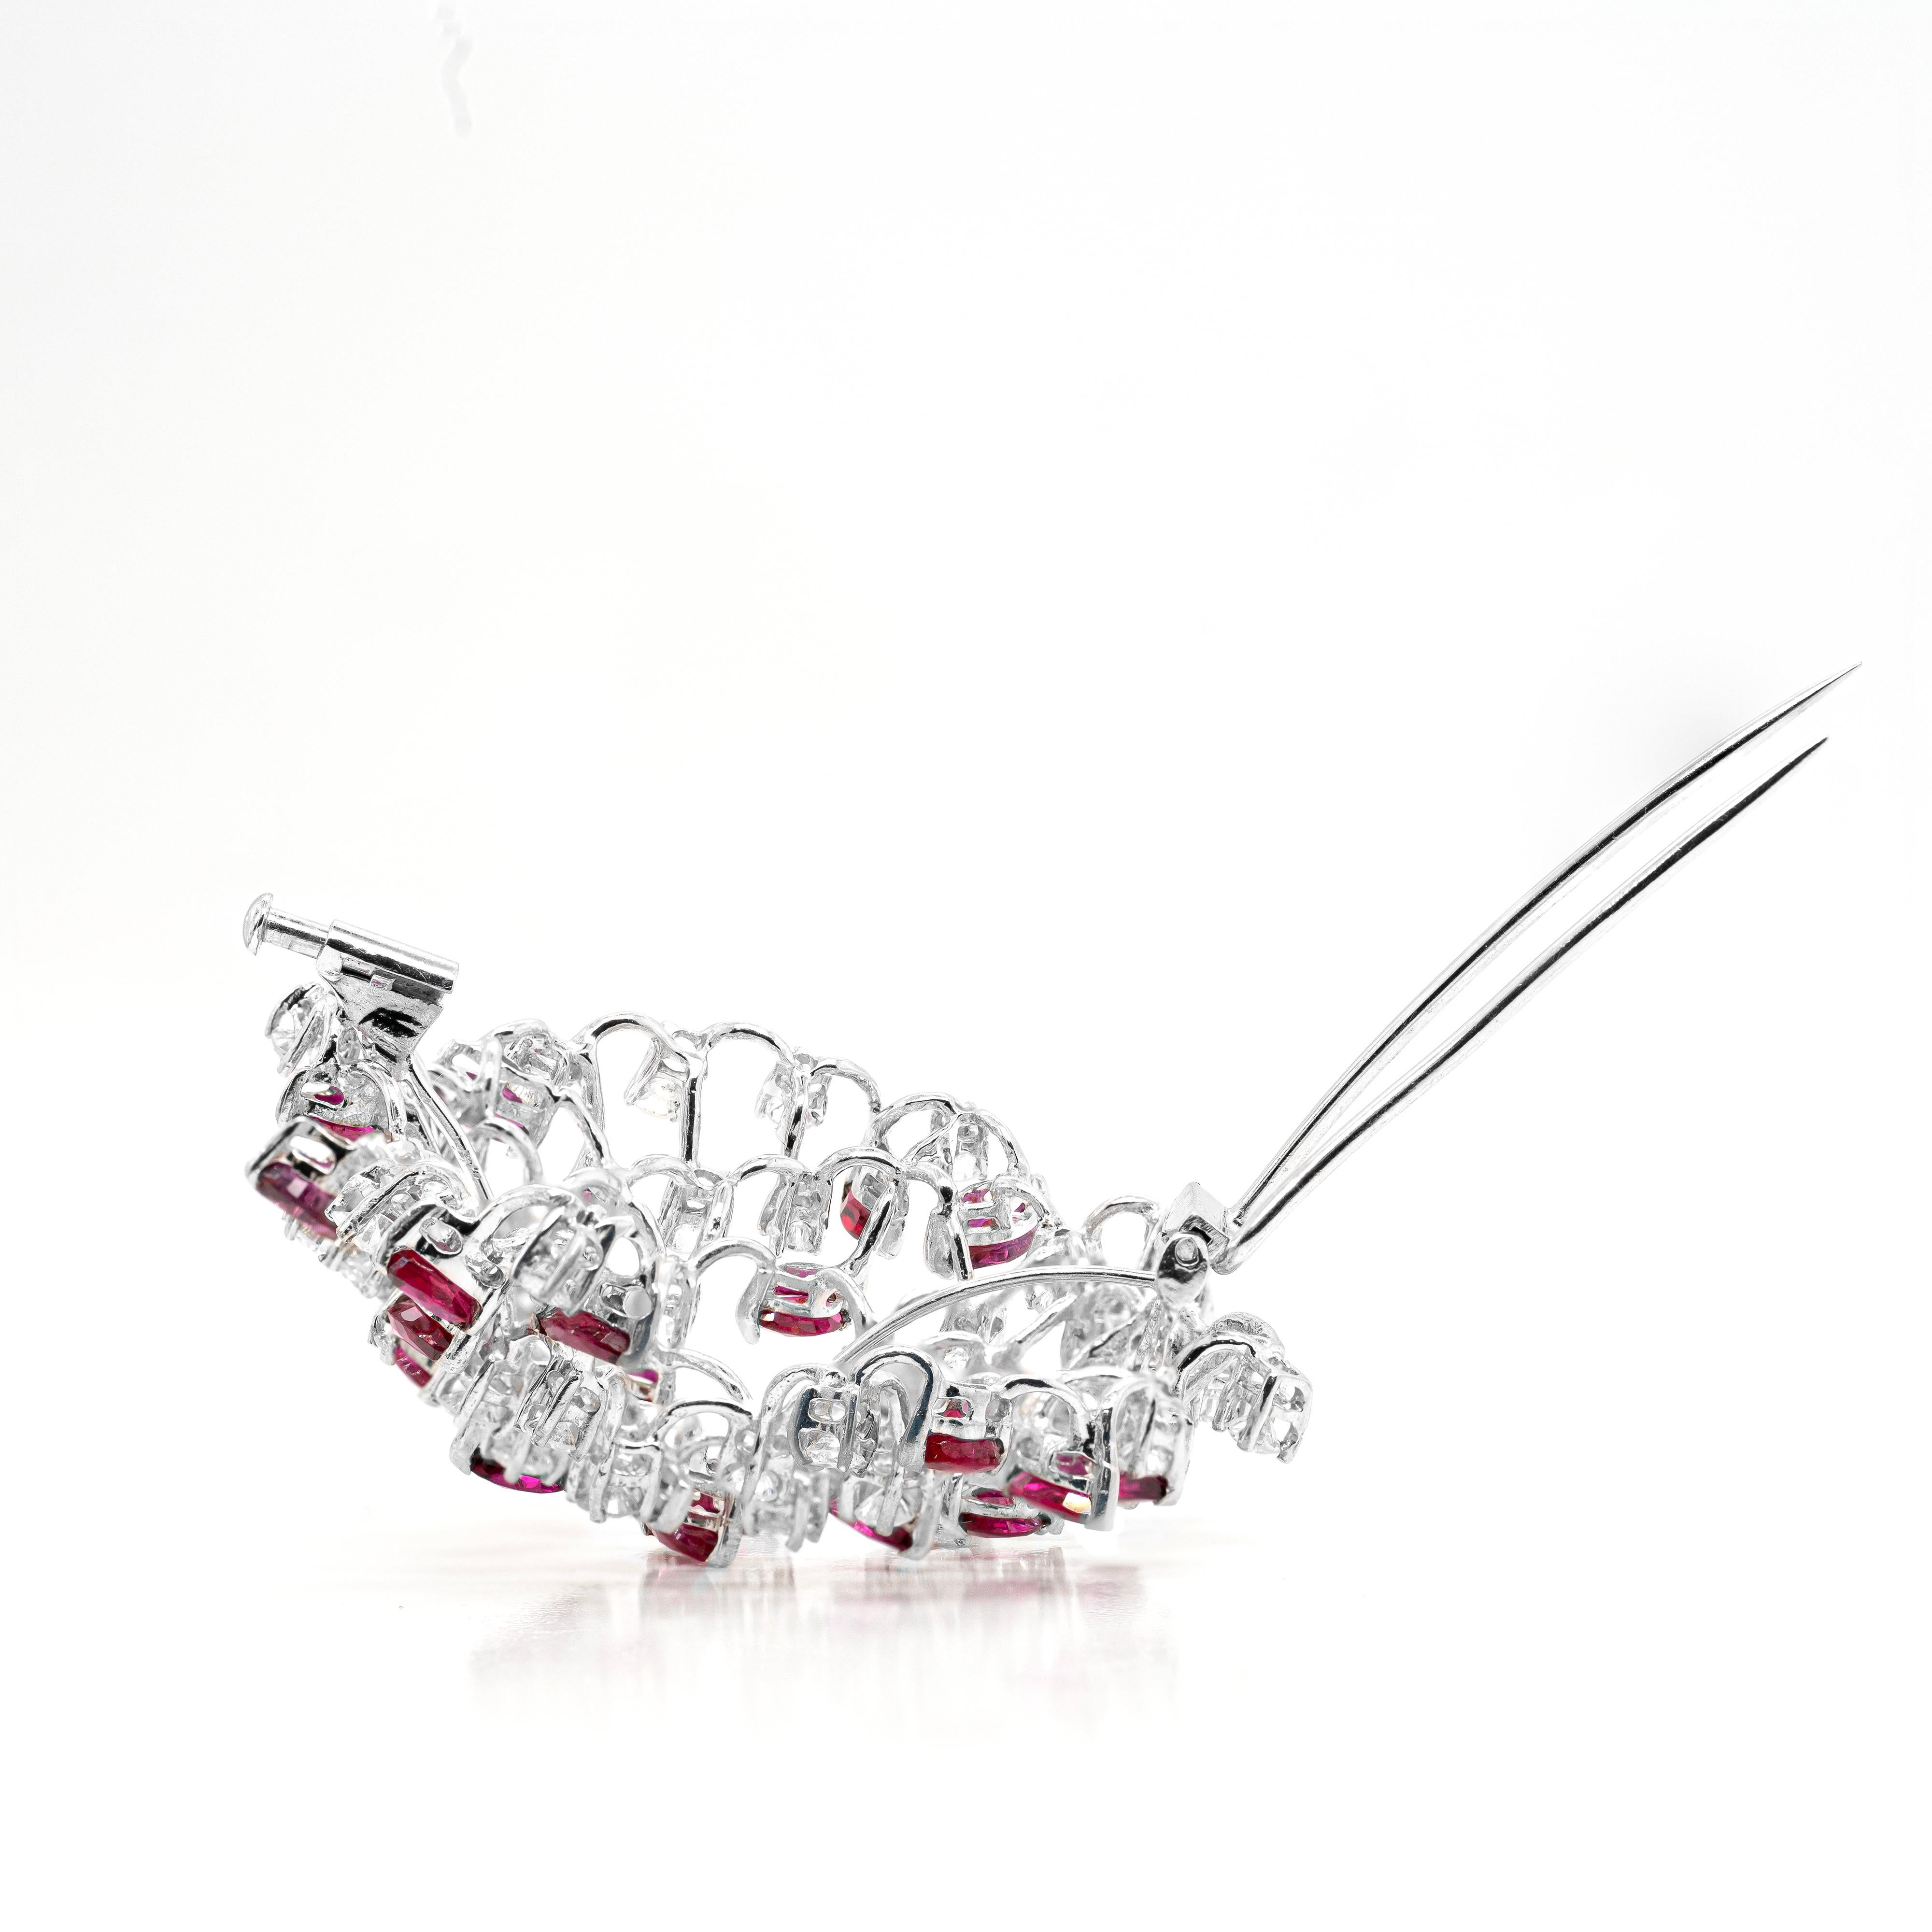 Cette magnifique broche unique en son genre est joliment incrustée d'un mélange de 29 rubis de forme marquise et de 36 diamants ronds de haute qualité de taille brillante répartis parmi les rubis vibrants. Toutes les pierres sont parfaitement